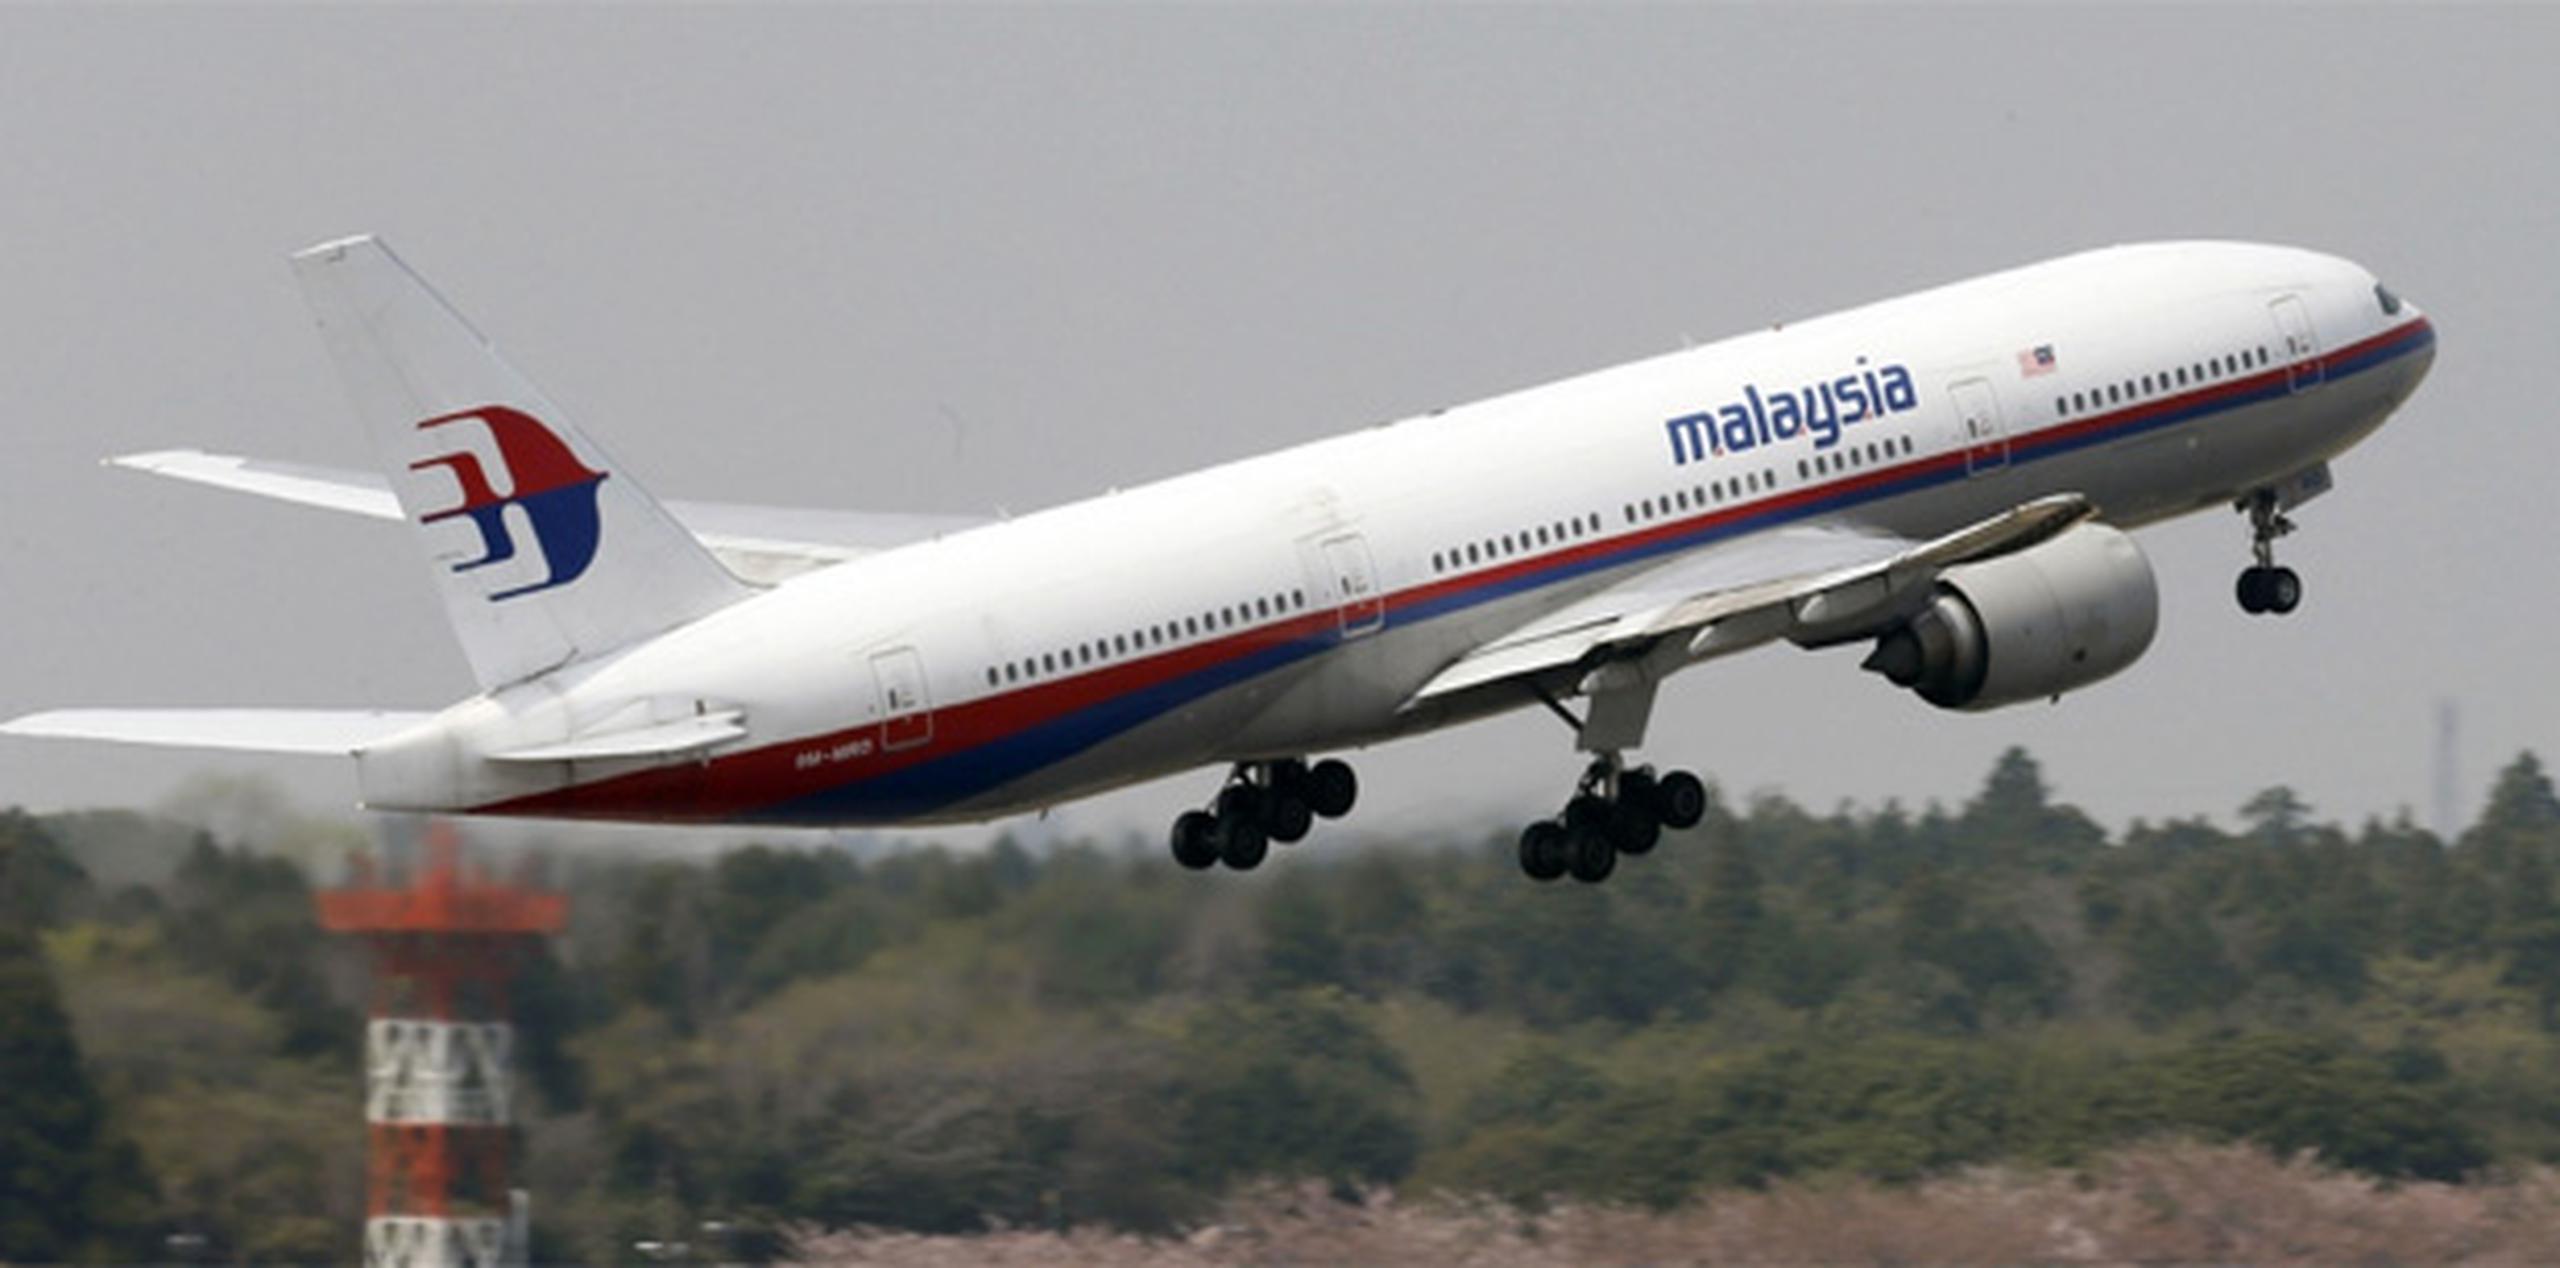 El gobierno malasio declaró oficialmente el jueves que el aún perdido vuelo 370 de Malaysia Airlines tuvo un accidente y dijo que daba por muertas a las 239 personas que viajaban a bordo. (Archivo)